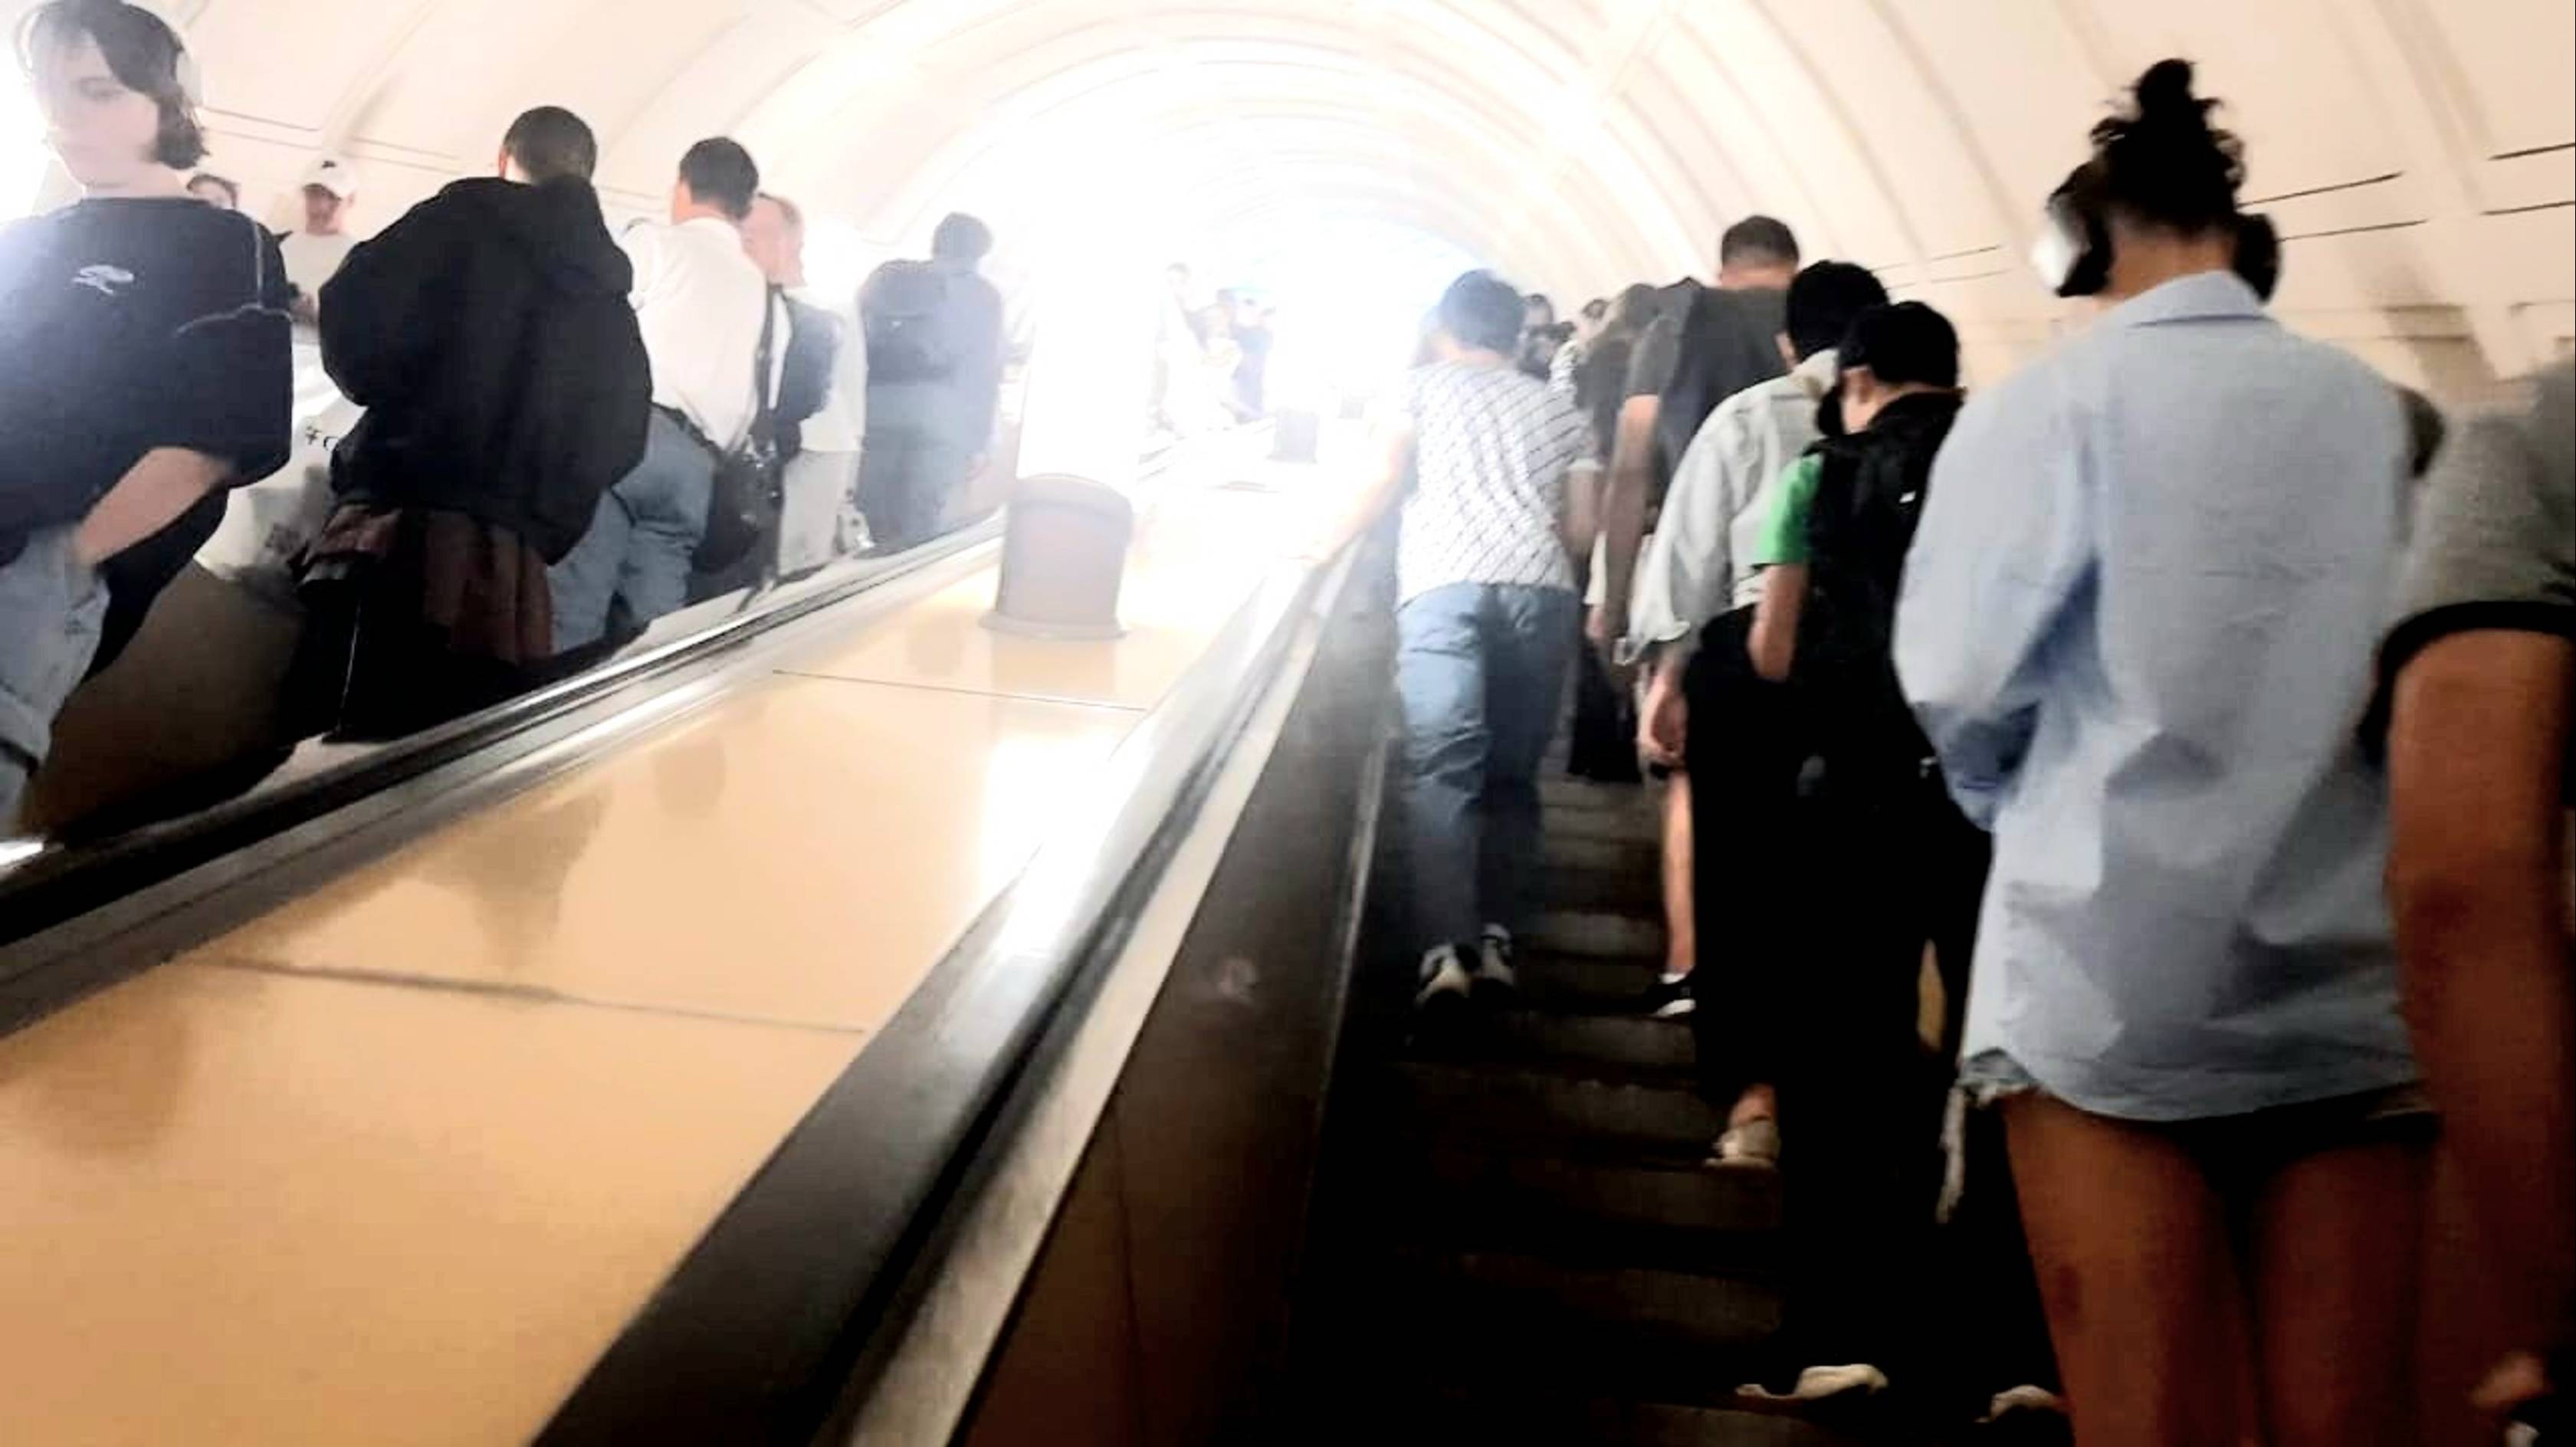 Выход из метро Павелецкая кольцевой линии к поездам вокзала на посадку в поезда и прибытие поездов